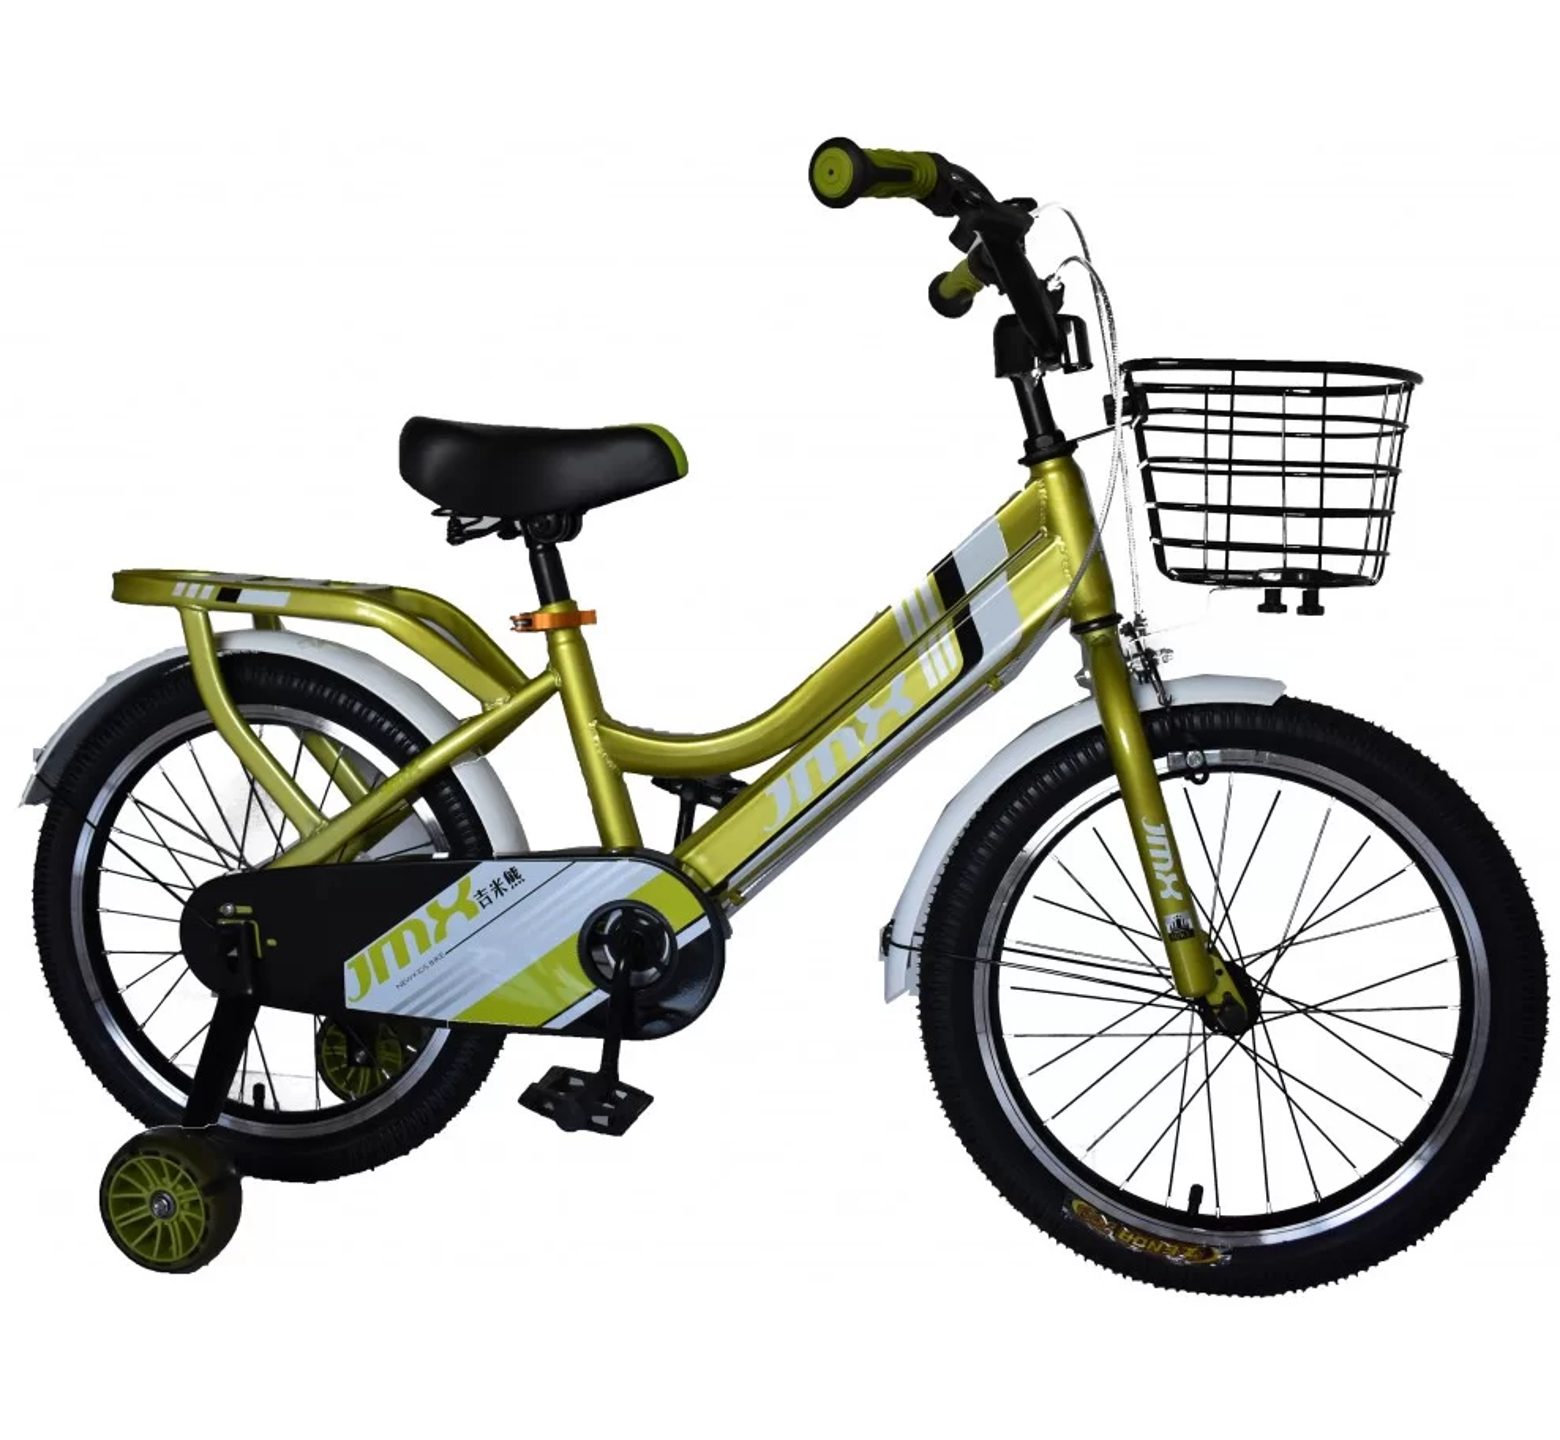 Ποδήλατο Jmx από 18 έως 20 ίντσες με καλάθι και σχάρα σε πράσινο χρώμα